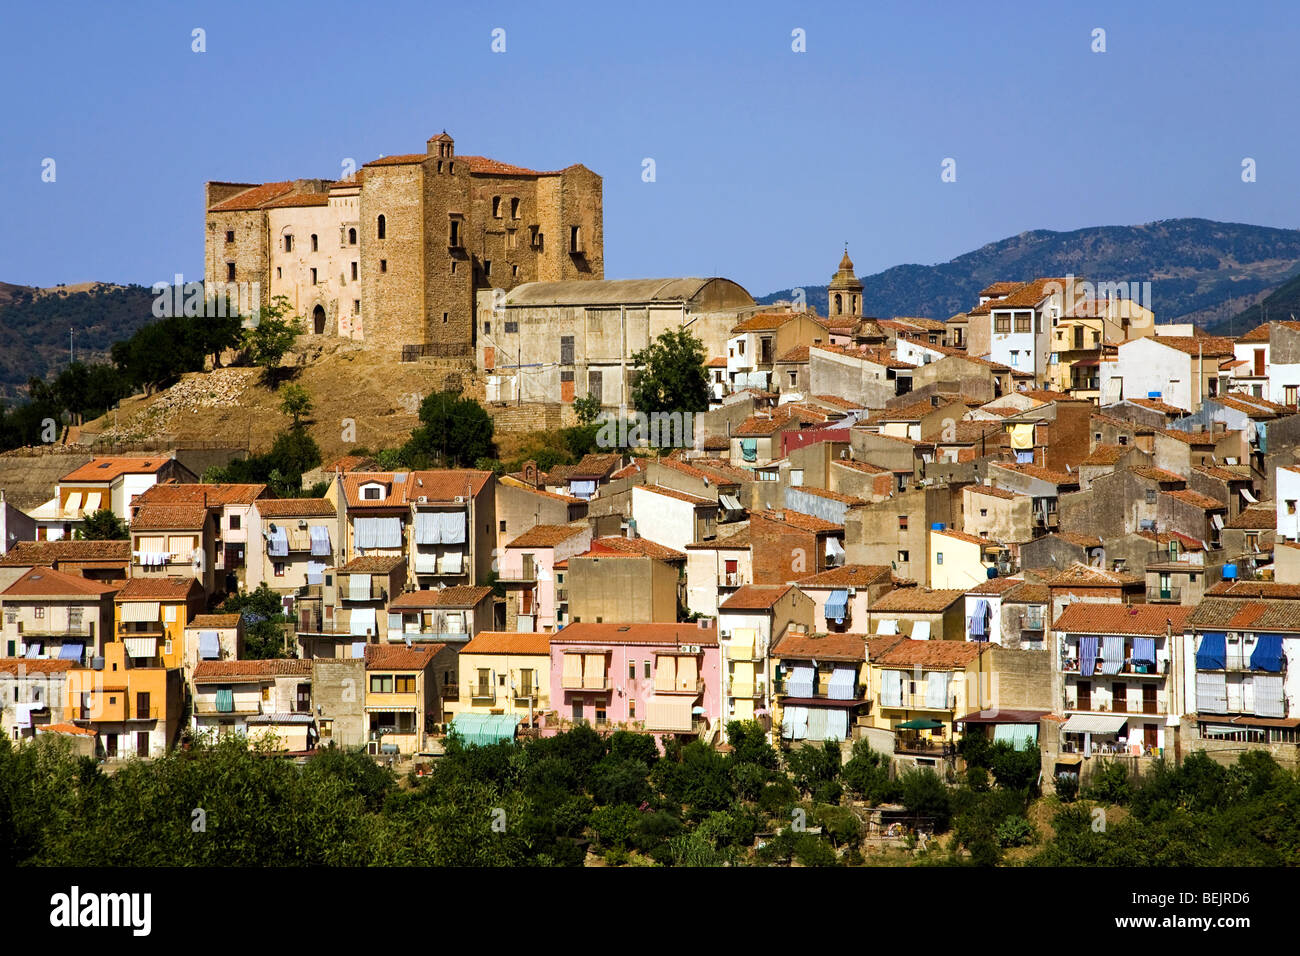 Cityscape, Castelbuono, Sicily, Italy Stock Photo